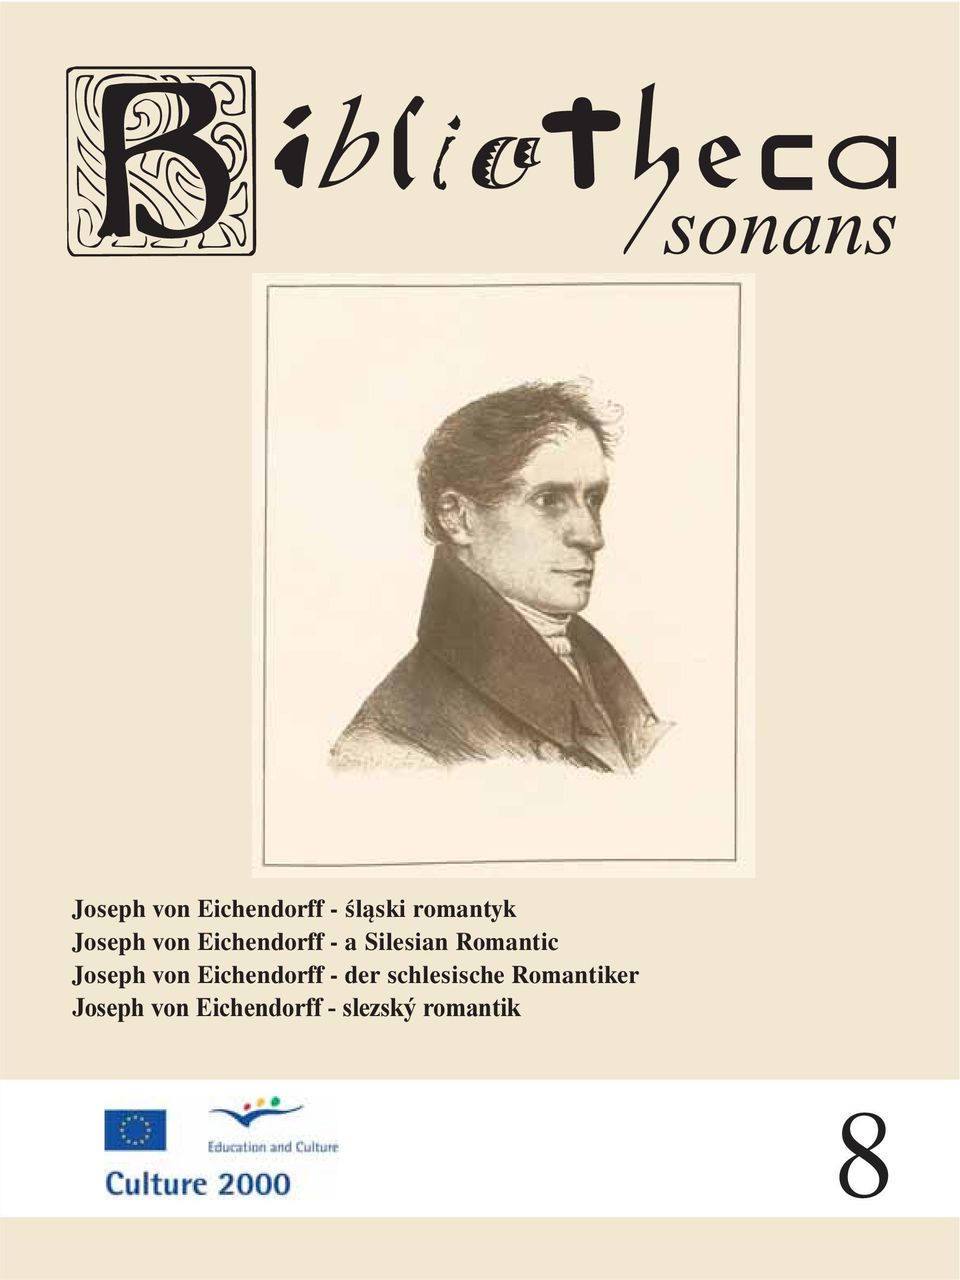 Joseph von Eichendorff - der schlesische